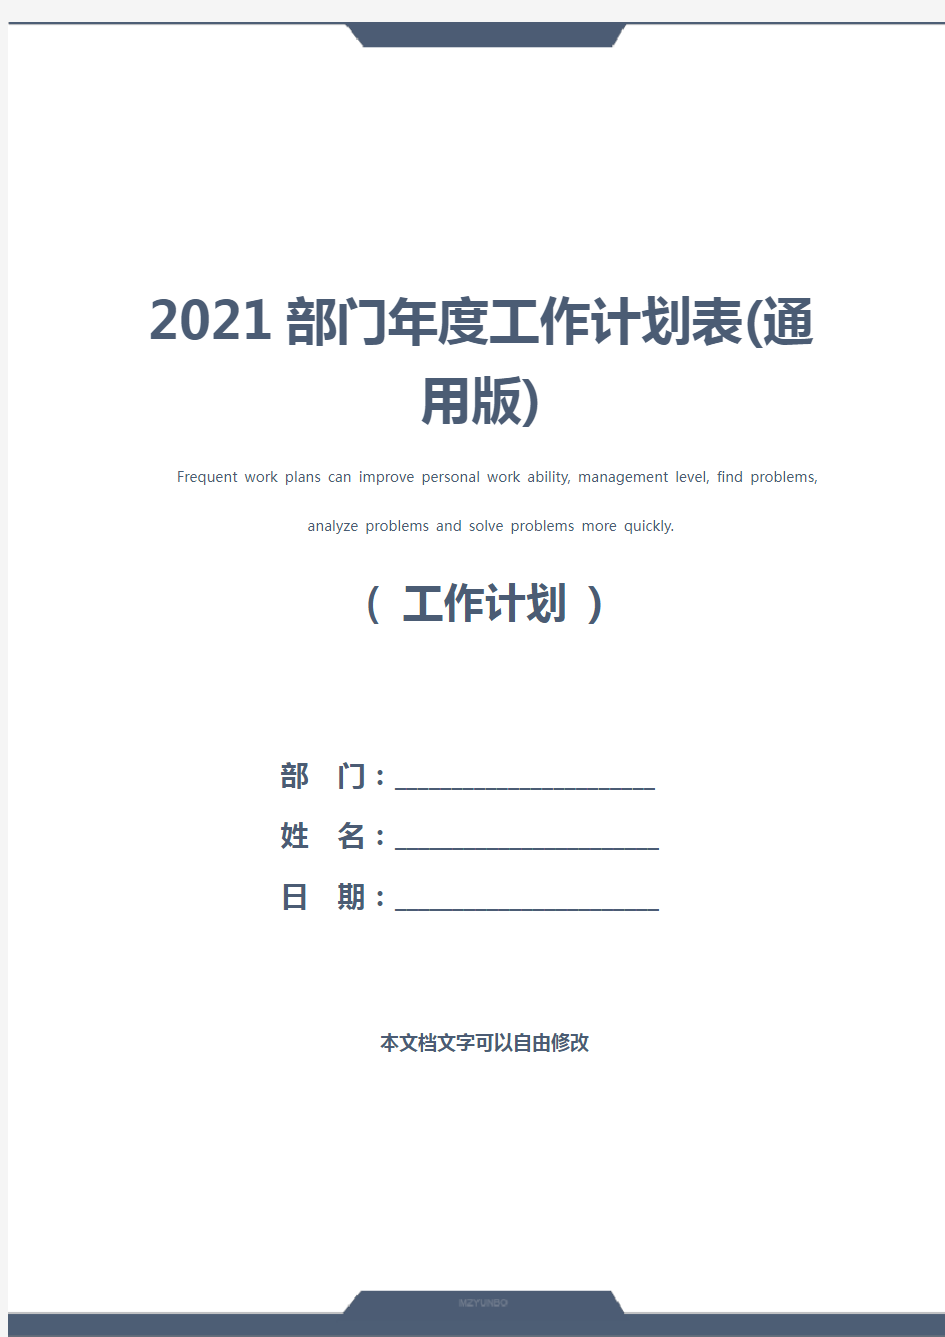 2021部门年度工作计划表(通用版)